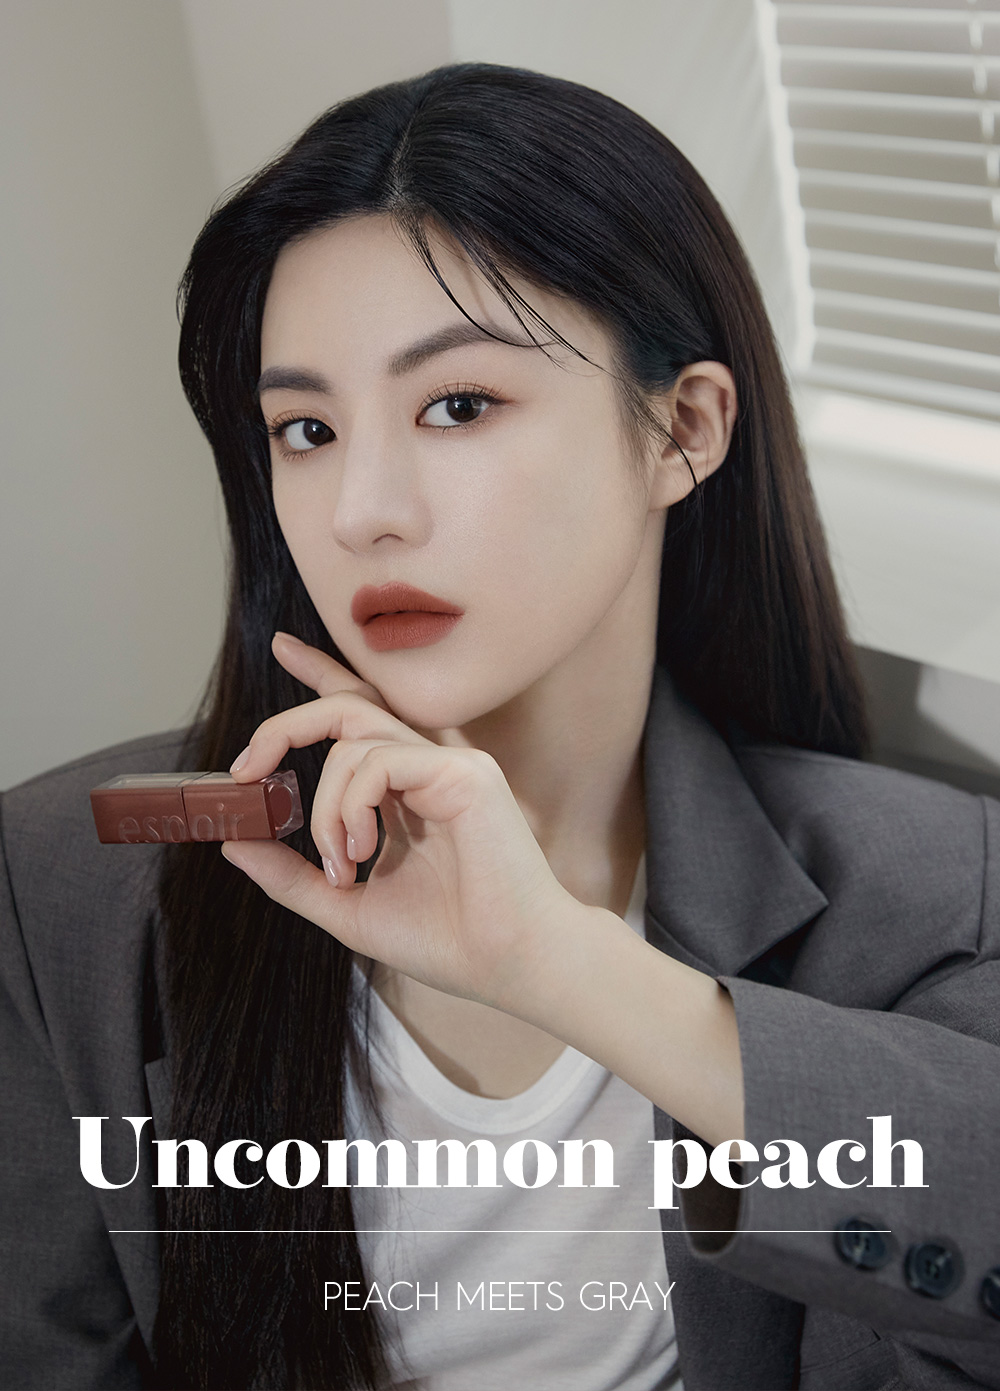 Uncommon peach - PEACH MEETS GRAY